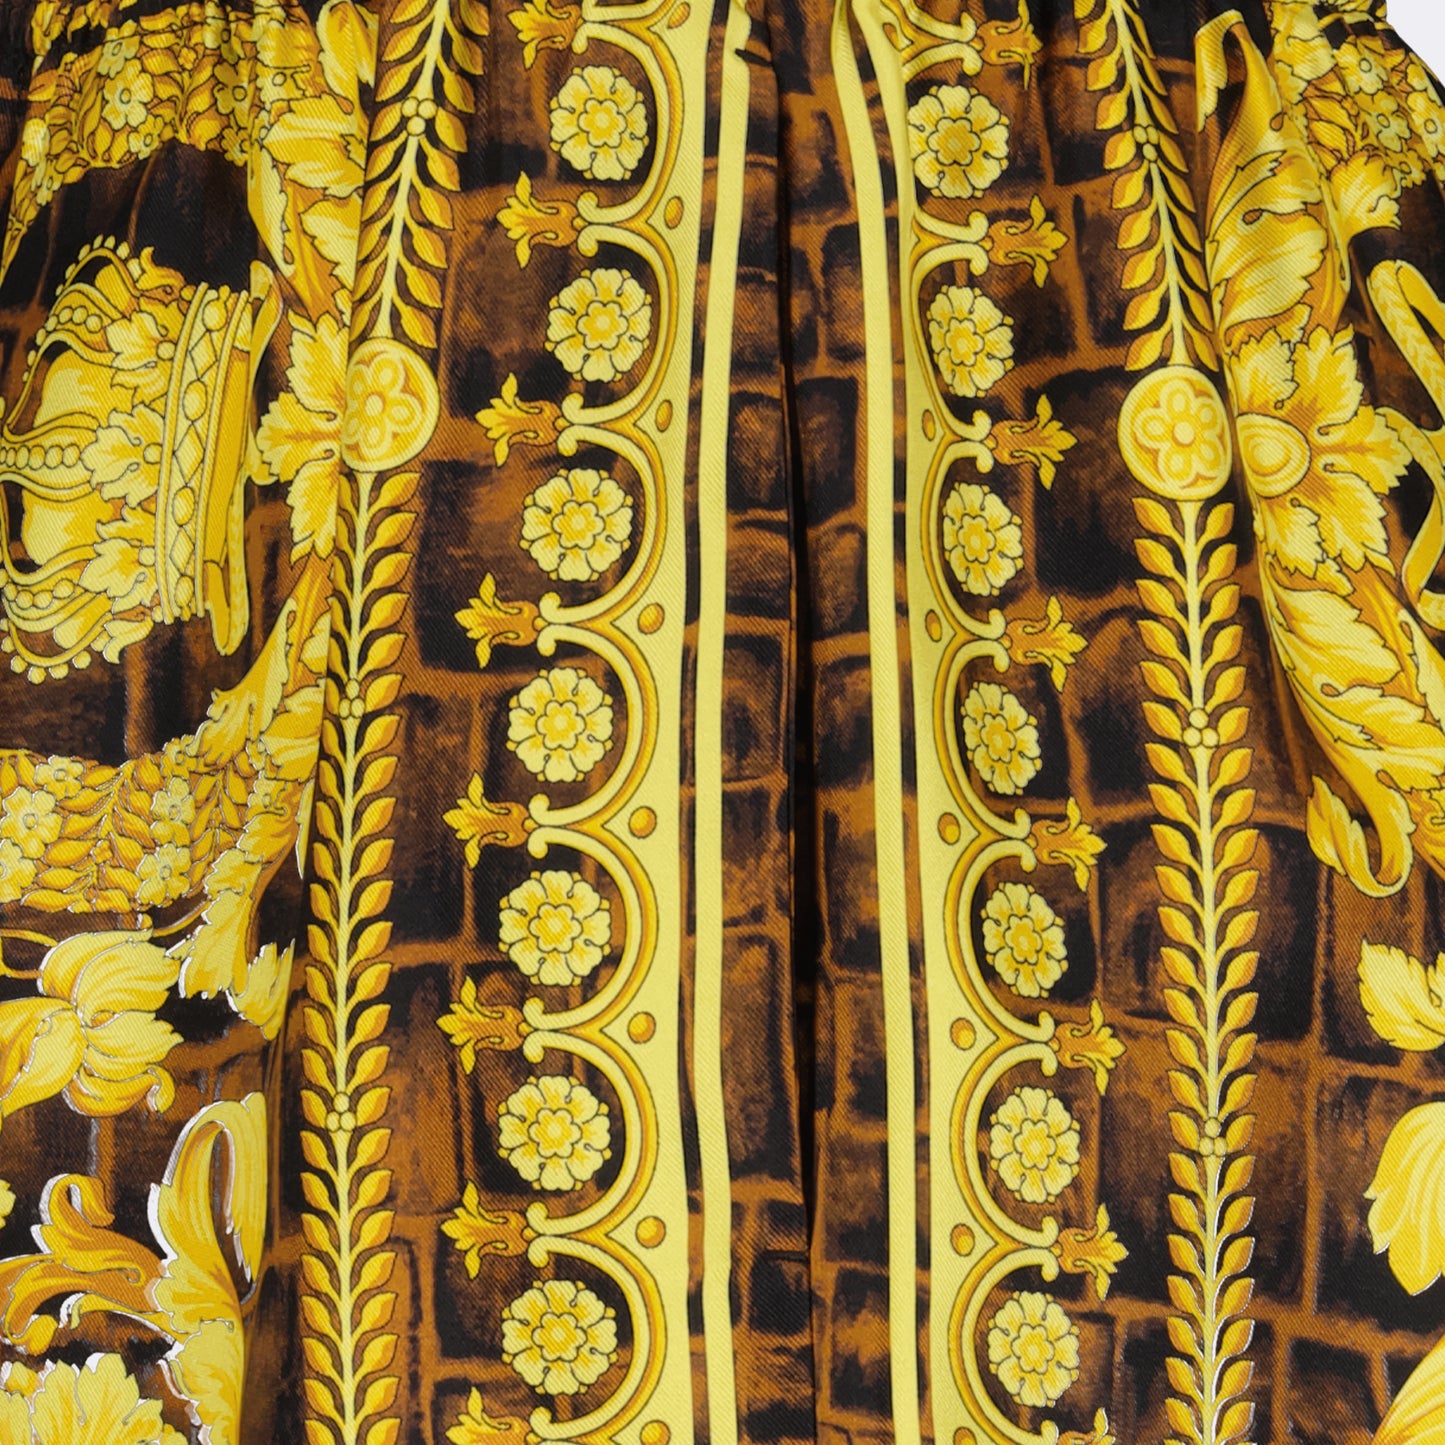 Baroccodile silk shorts